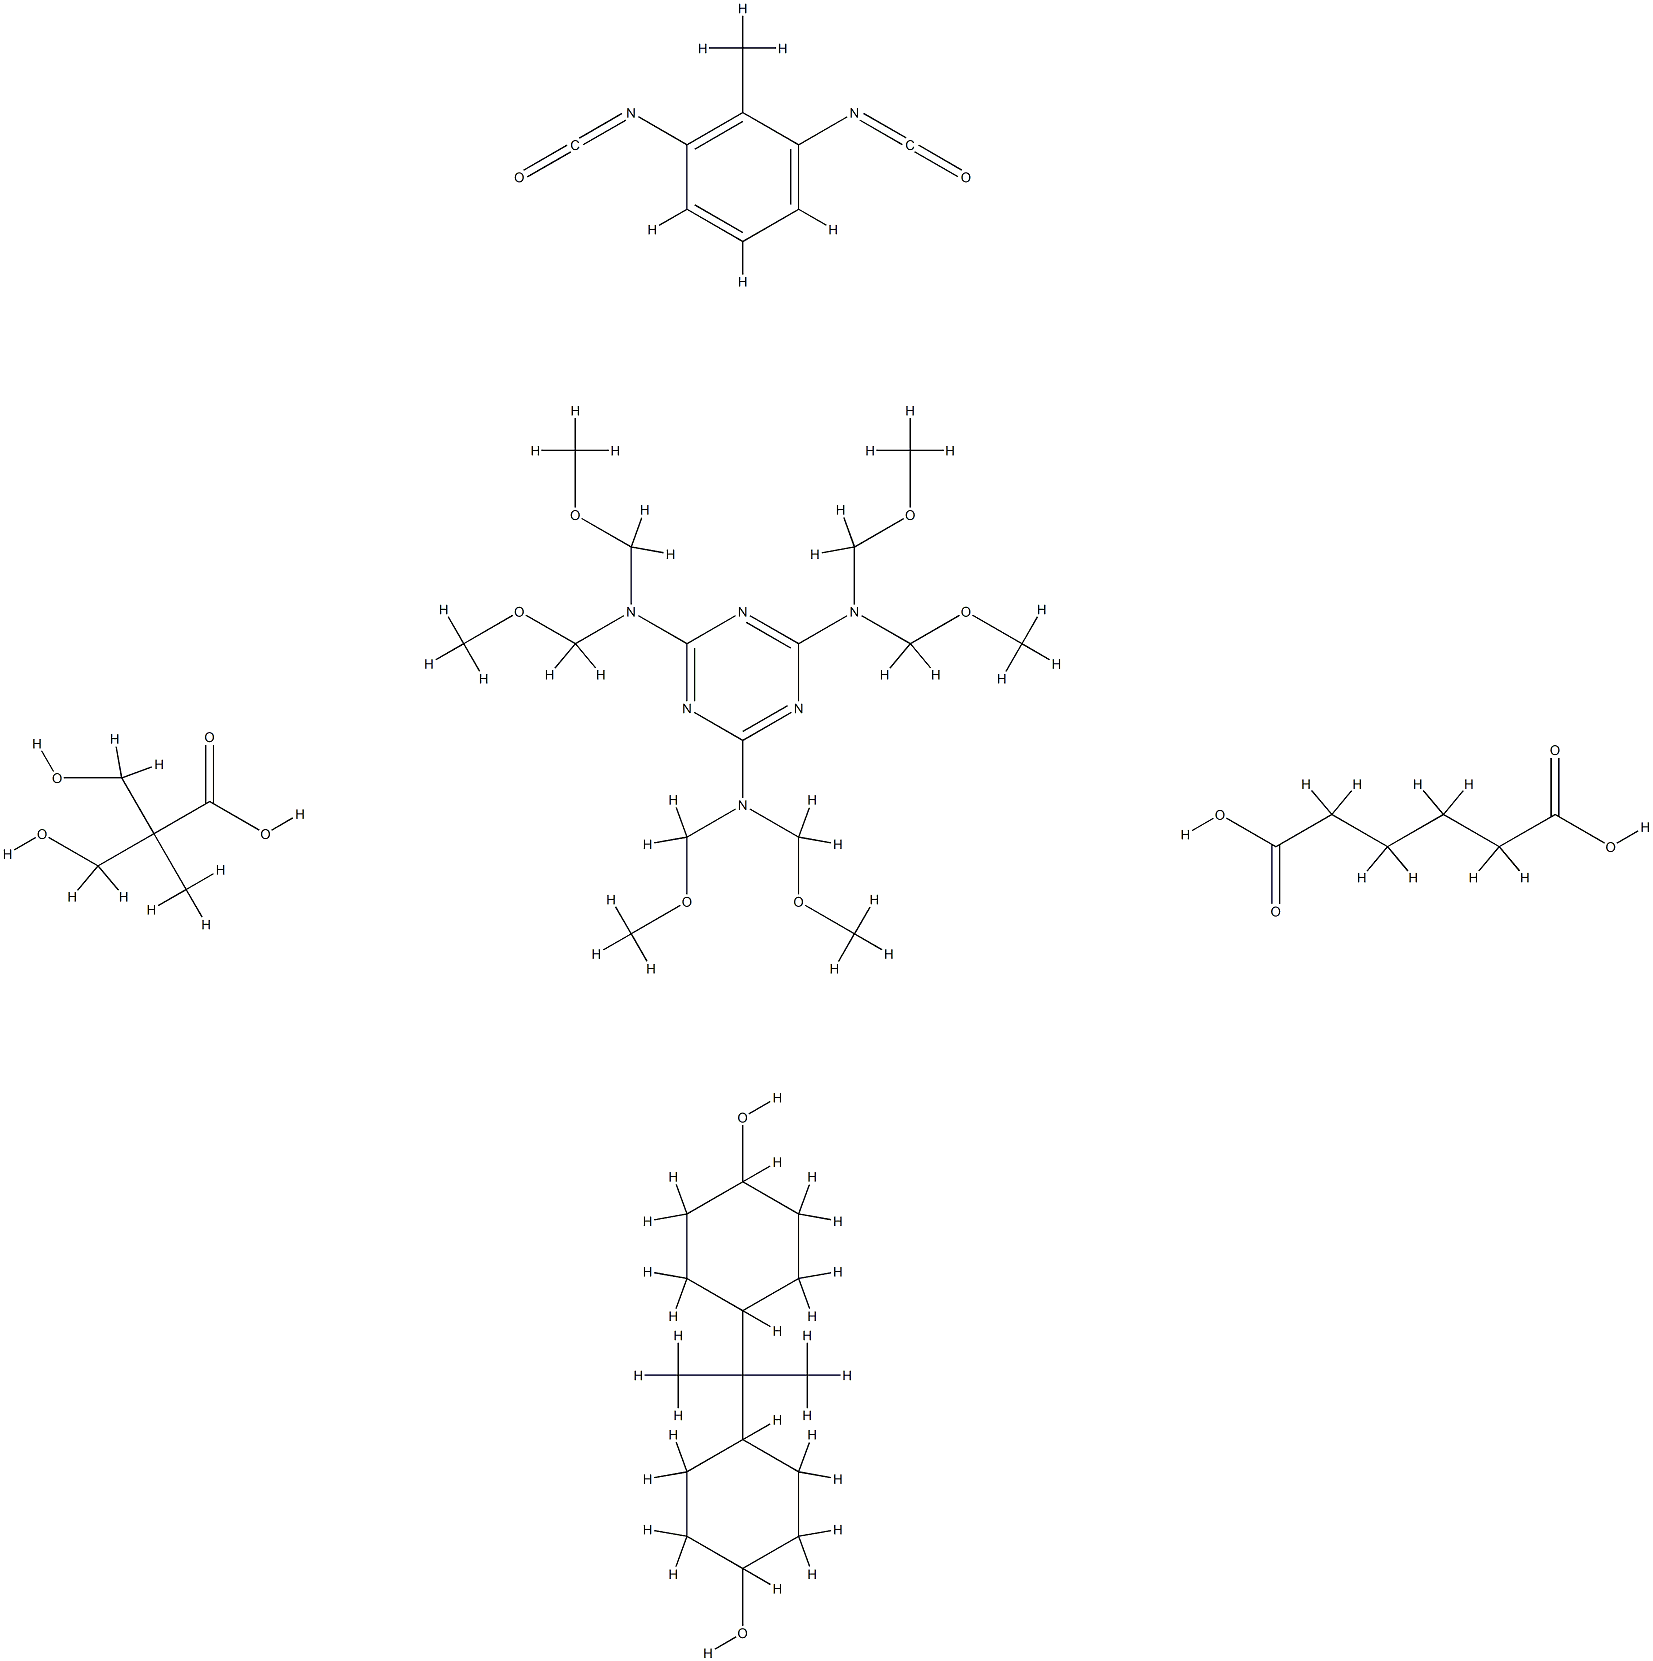 68299-33-2 Hexanedioic acid, polymer with 1,3-diisocyanatomethylbenzene, N,N,N',N',N'',N''-hexakis( methoxymethyl)-1,3,5-triazine-2,4,6-triamine, 3-hydroxy-2-(hydroxymethyl)-2-methylpropanoic acid and 4,4'-(1-methylethylidene)bis[cyclohexanol]